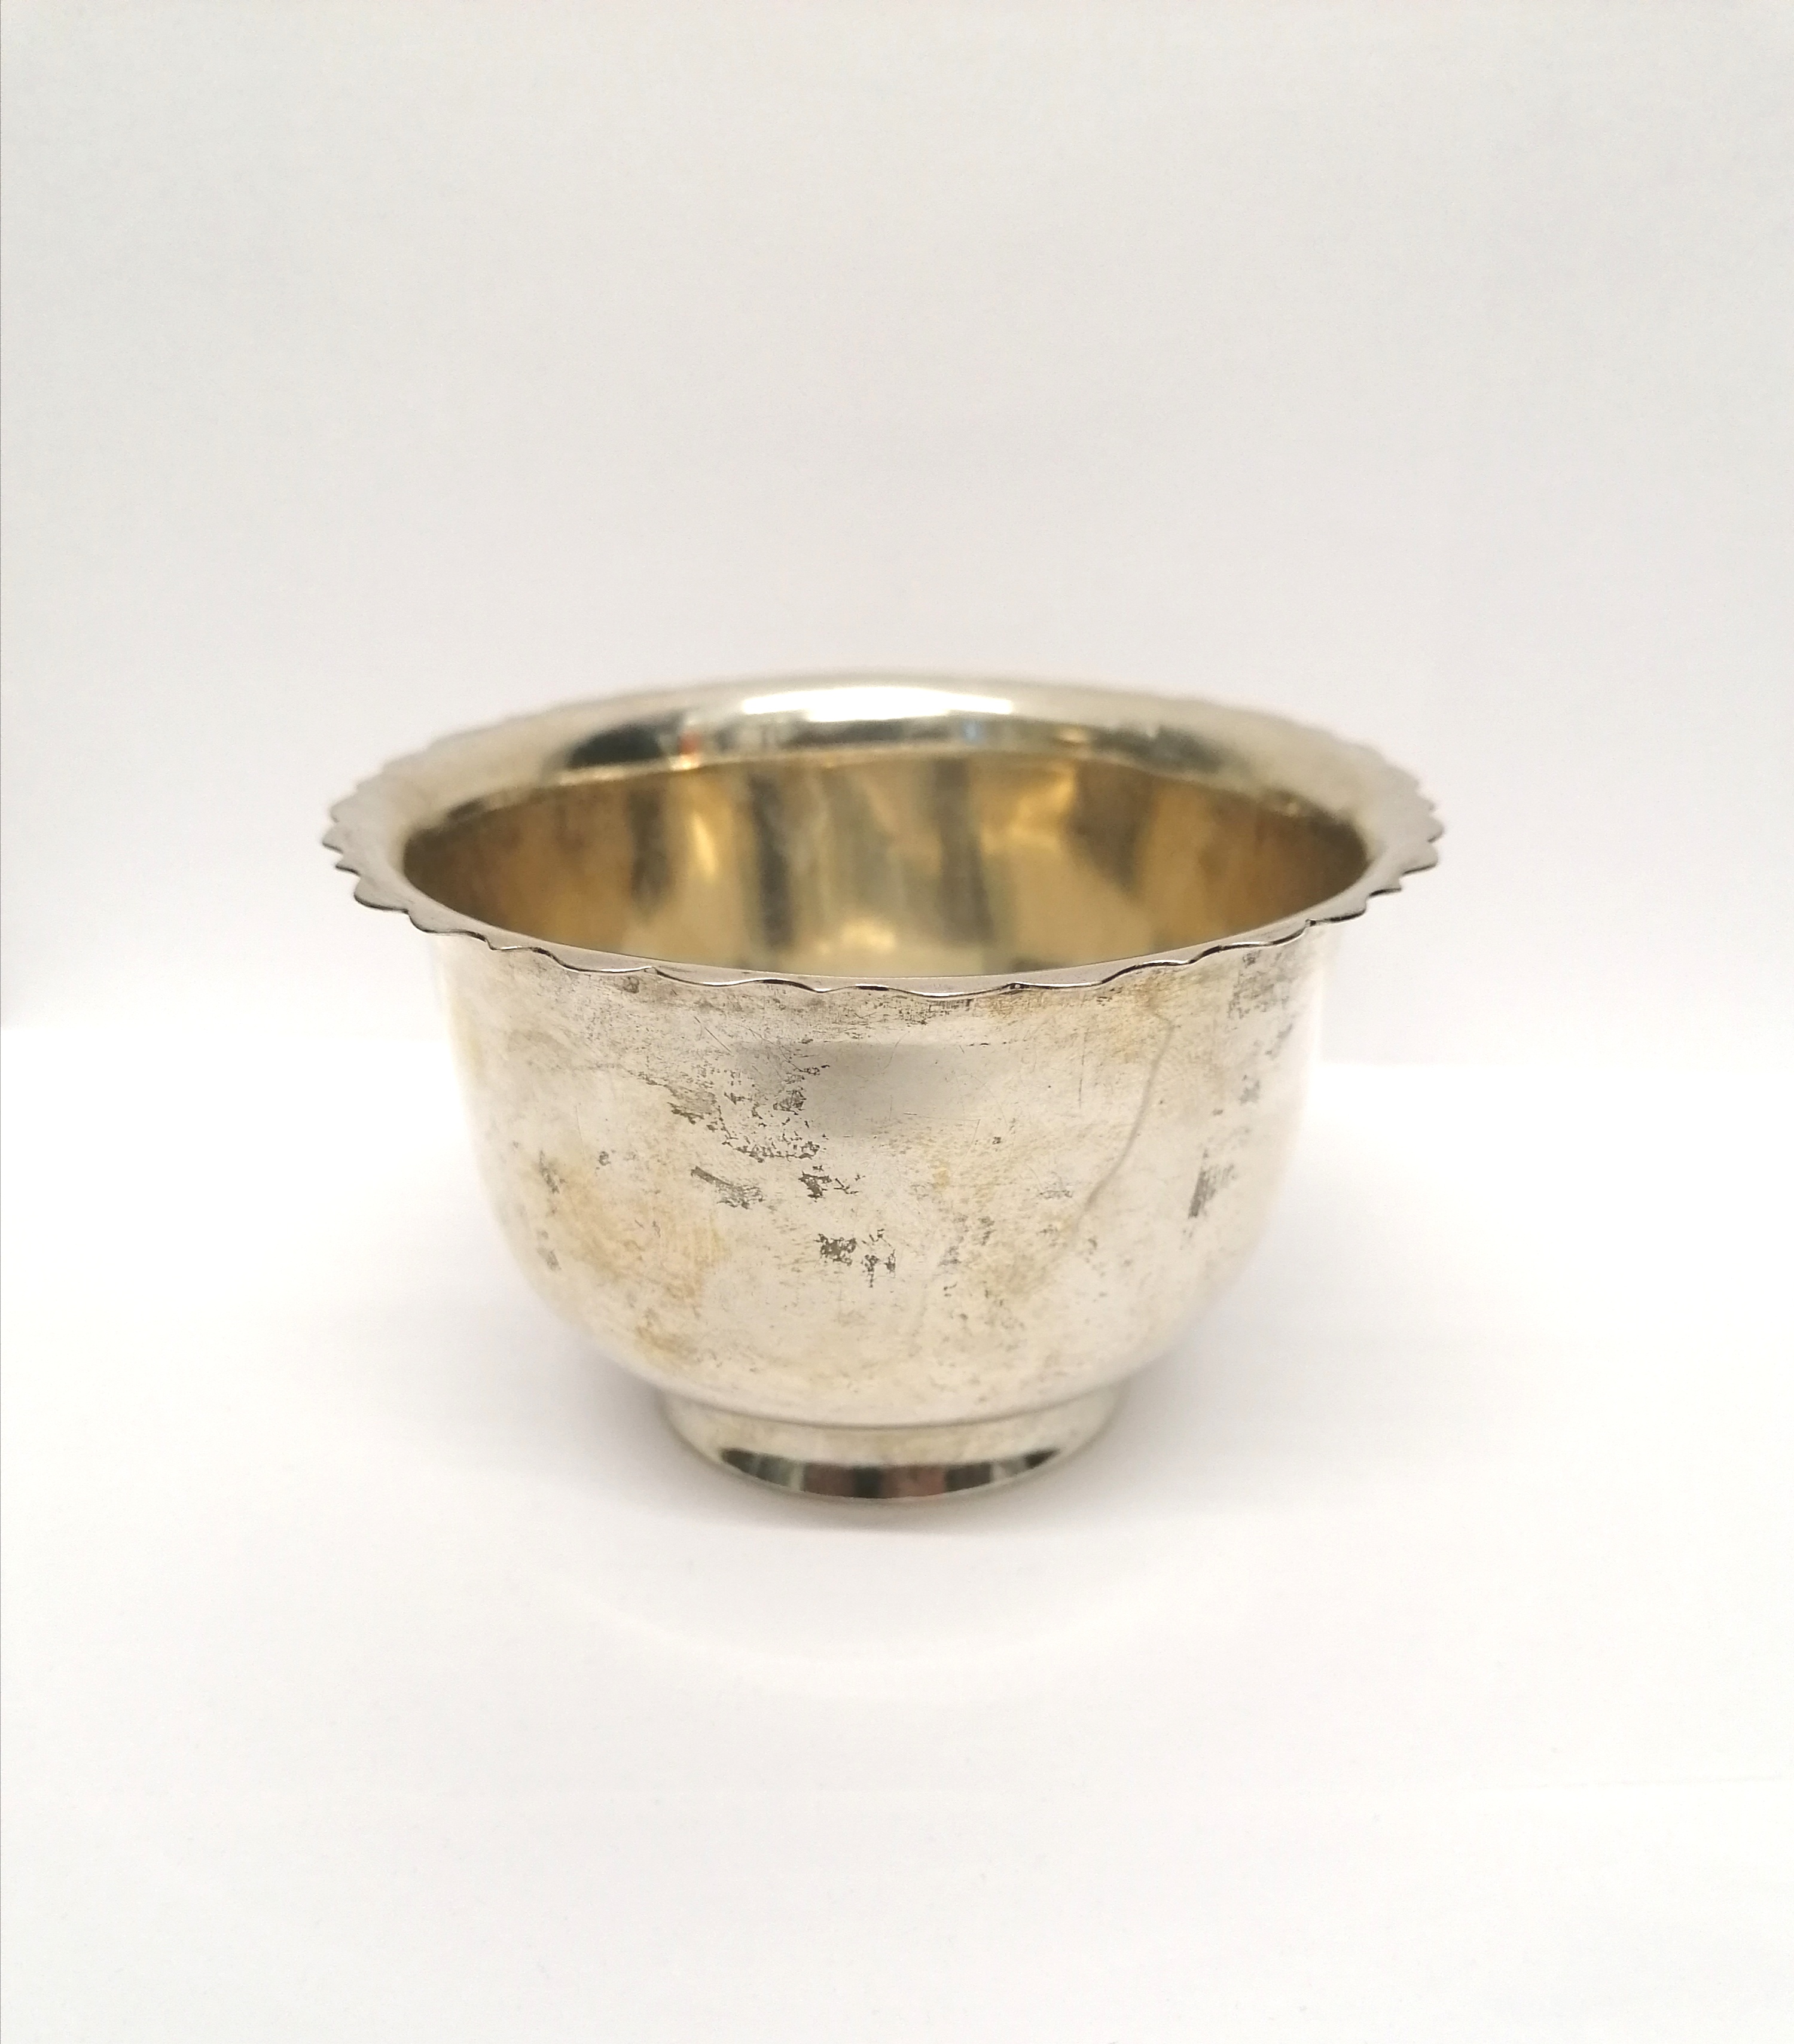 An Irish silver bowl, Dublin 1905 S.D. Neill. 6.5 cm height, 10 cm width approx. 102 gms approx.